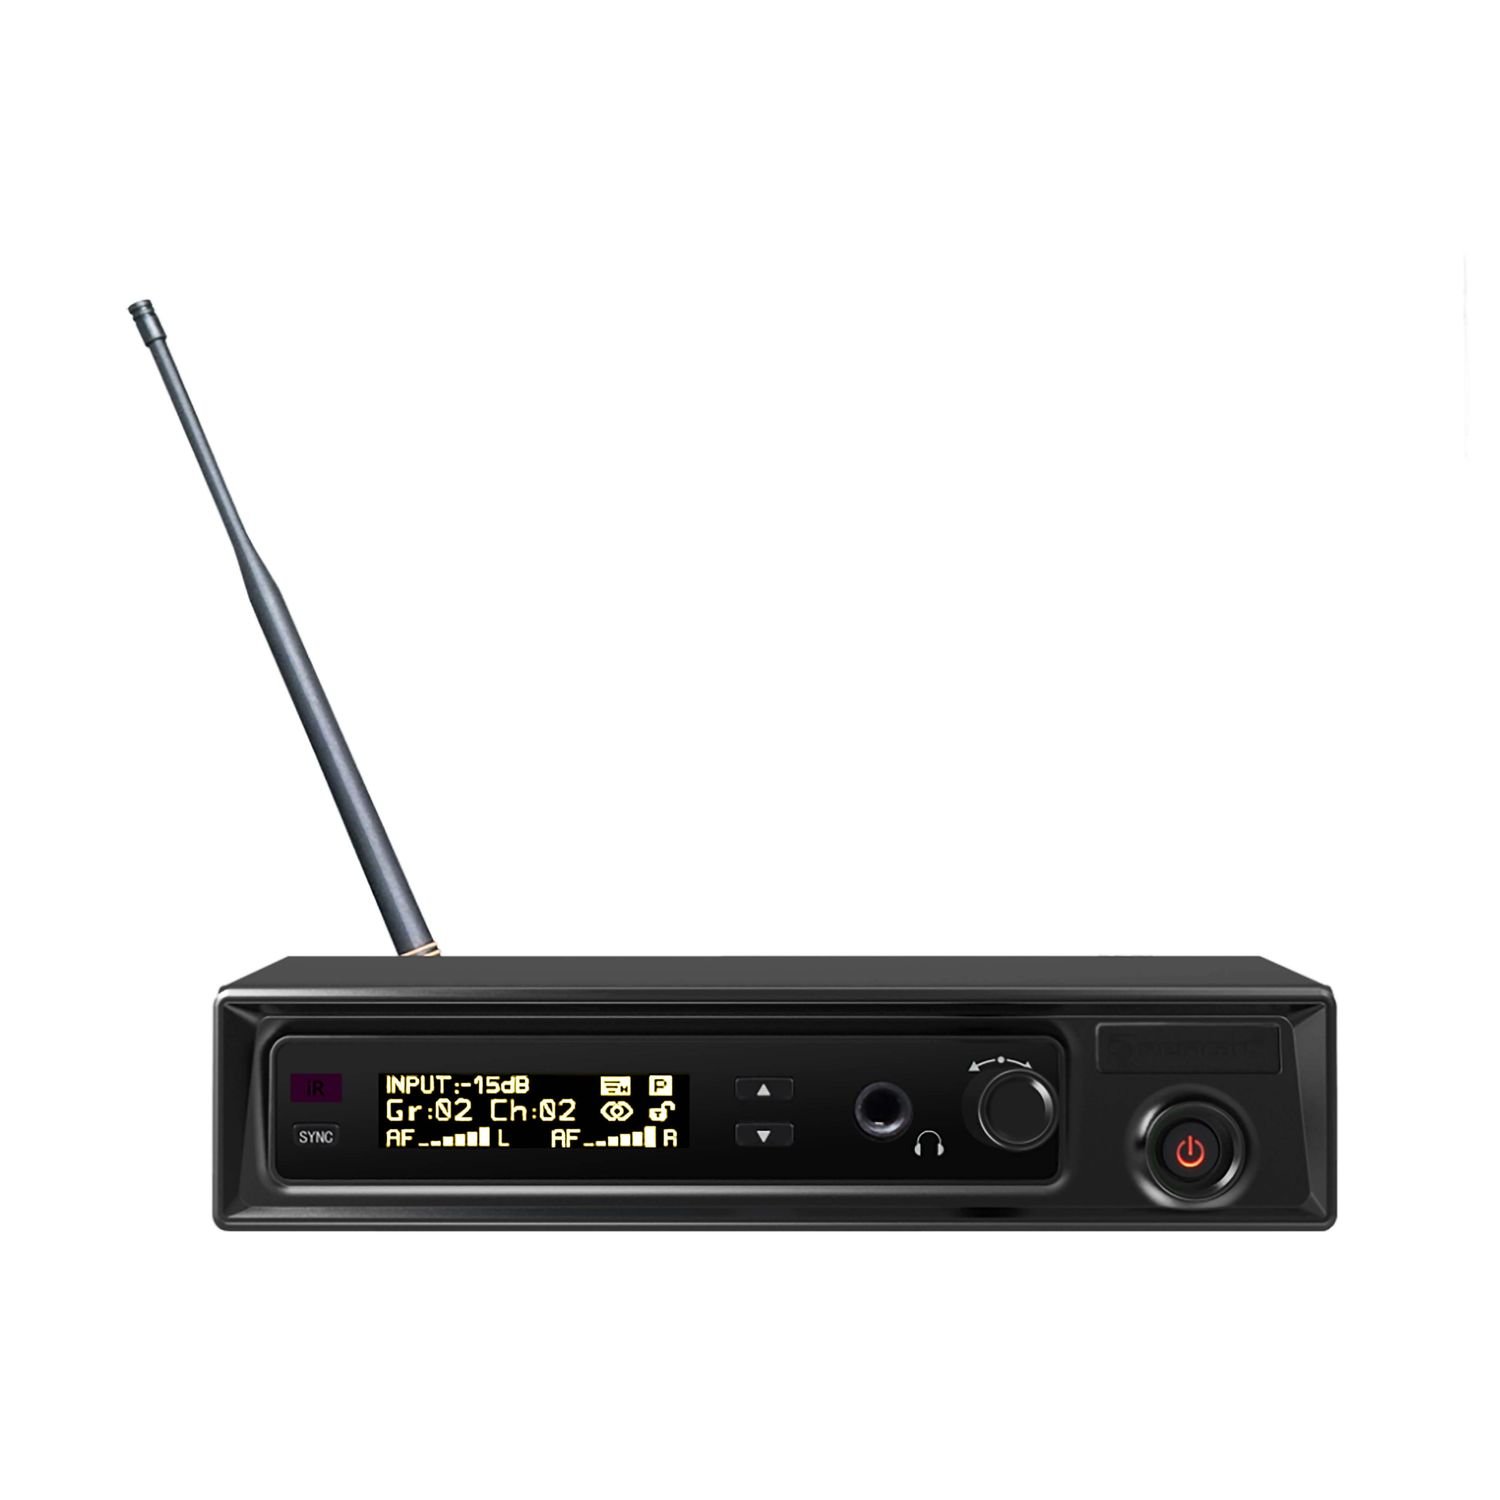 Relacart PM-320T  стерео передатчик, OLED дисплей, ширина полосы до 32MHz